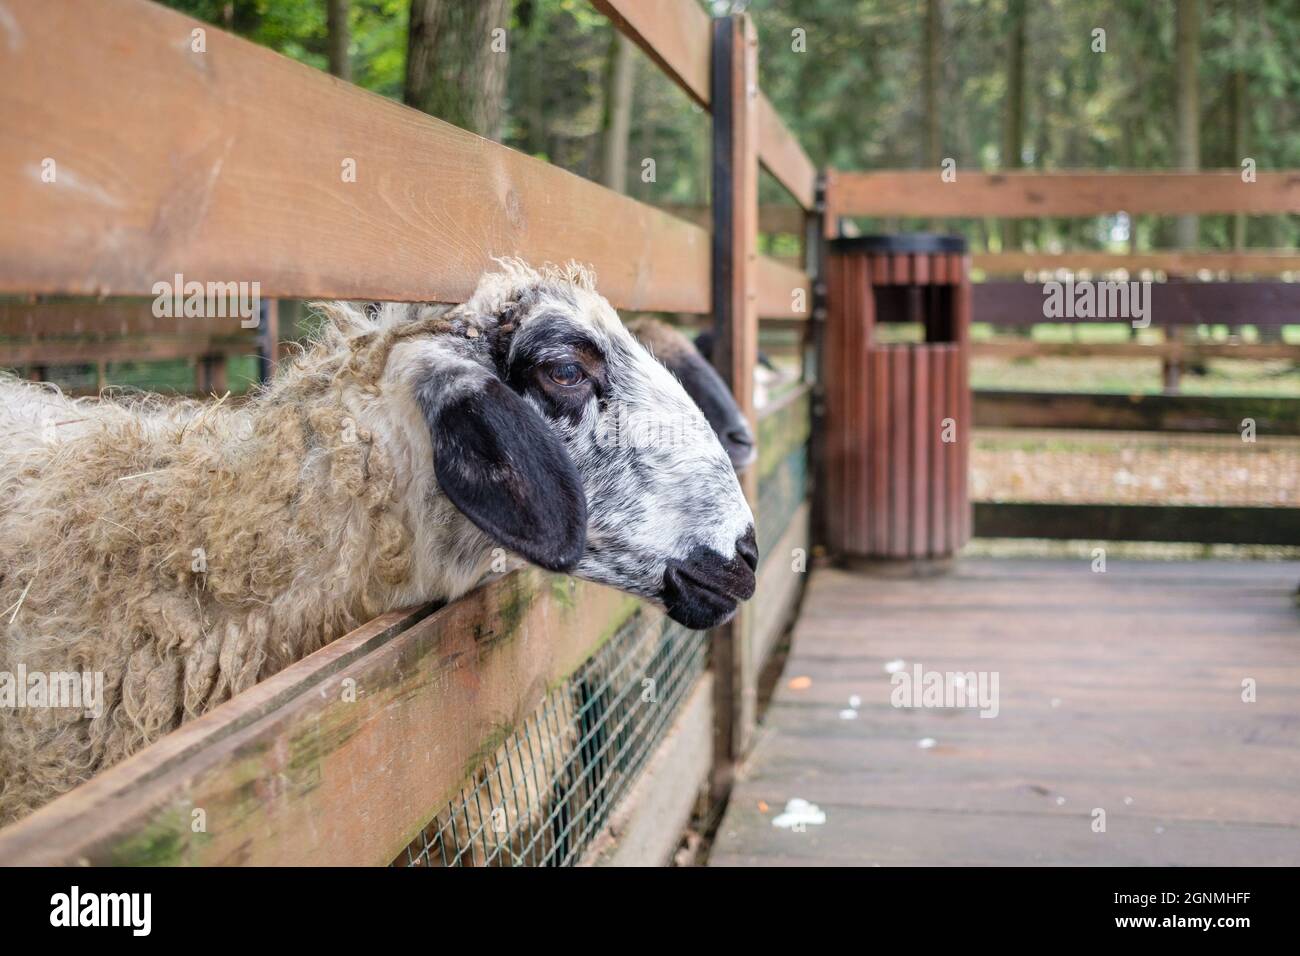 Fuoco selettivo sulla testa di una pecora che si stende tra le barre della recinzione. Animali domestici in una recinzione recintata. Foto Stock